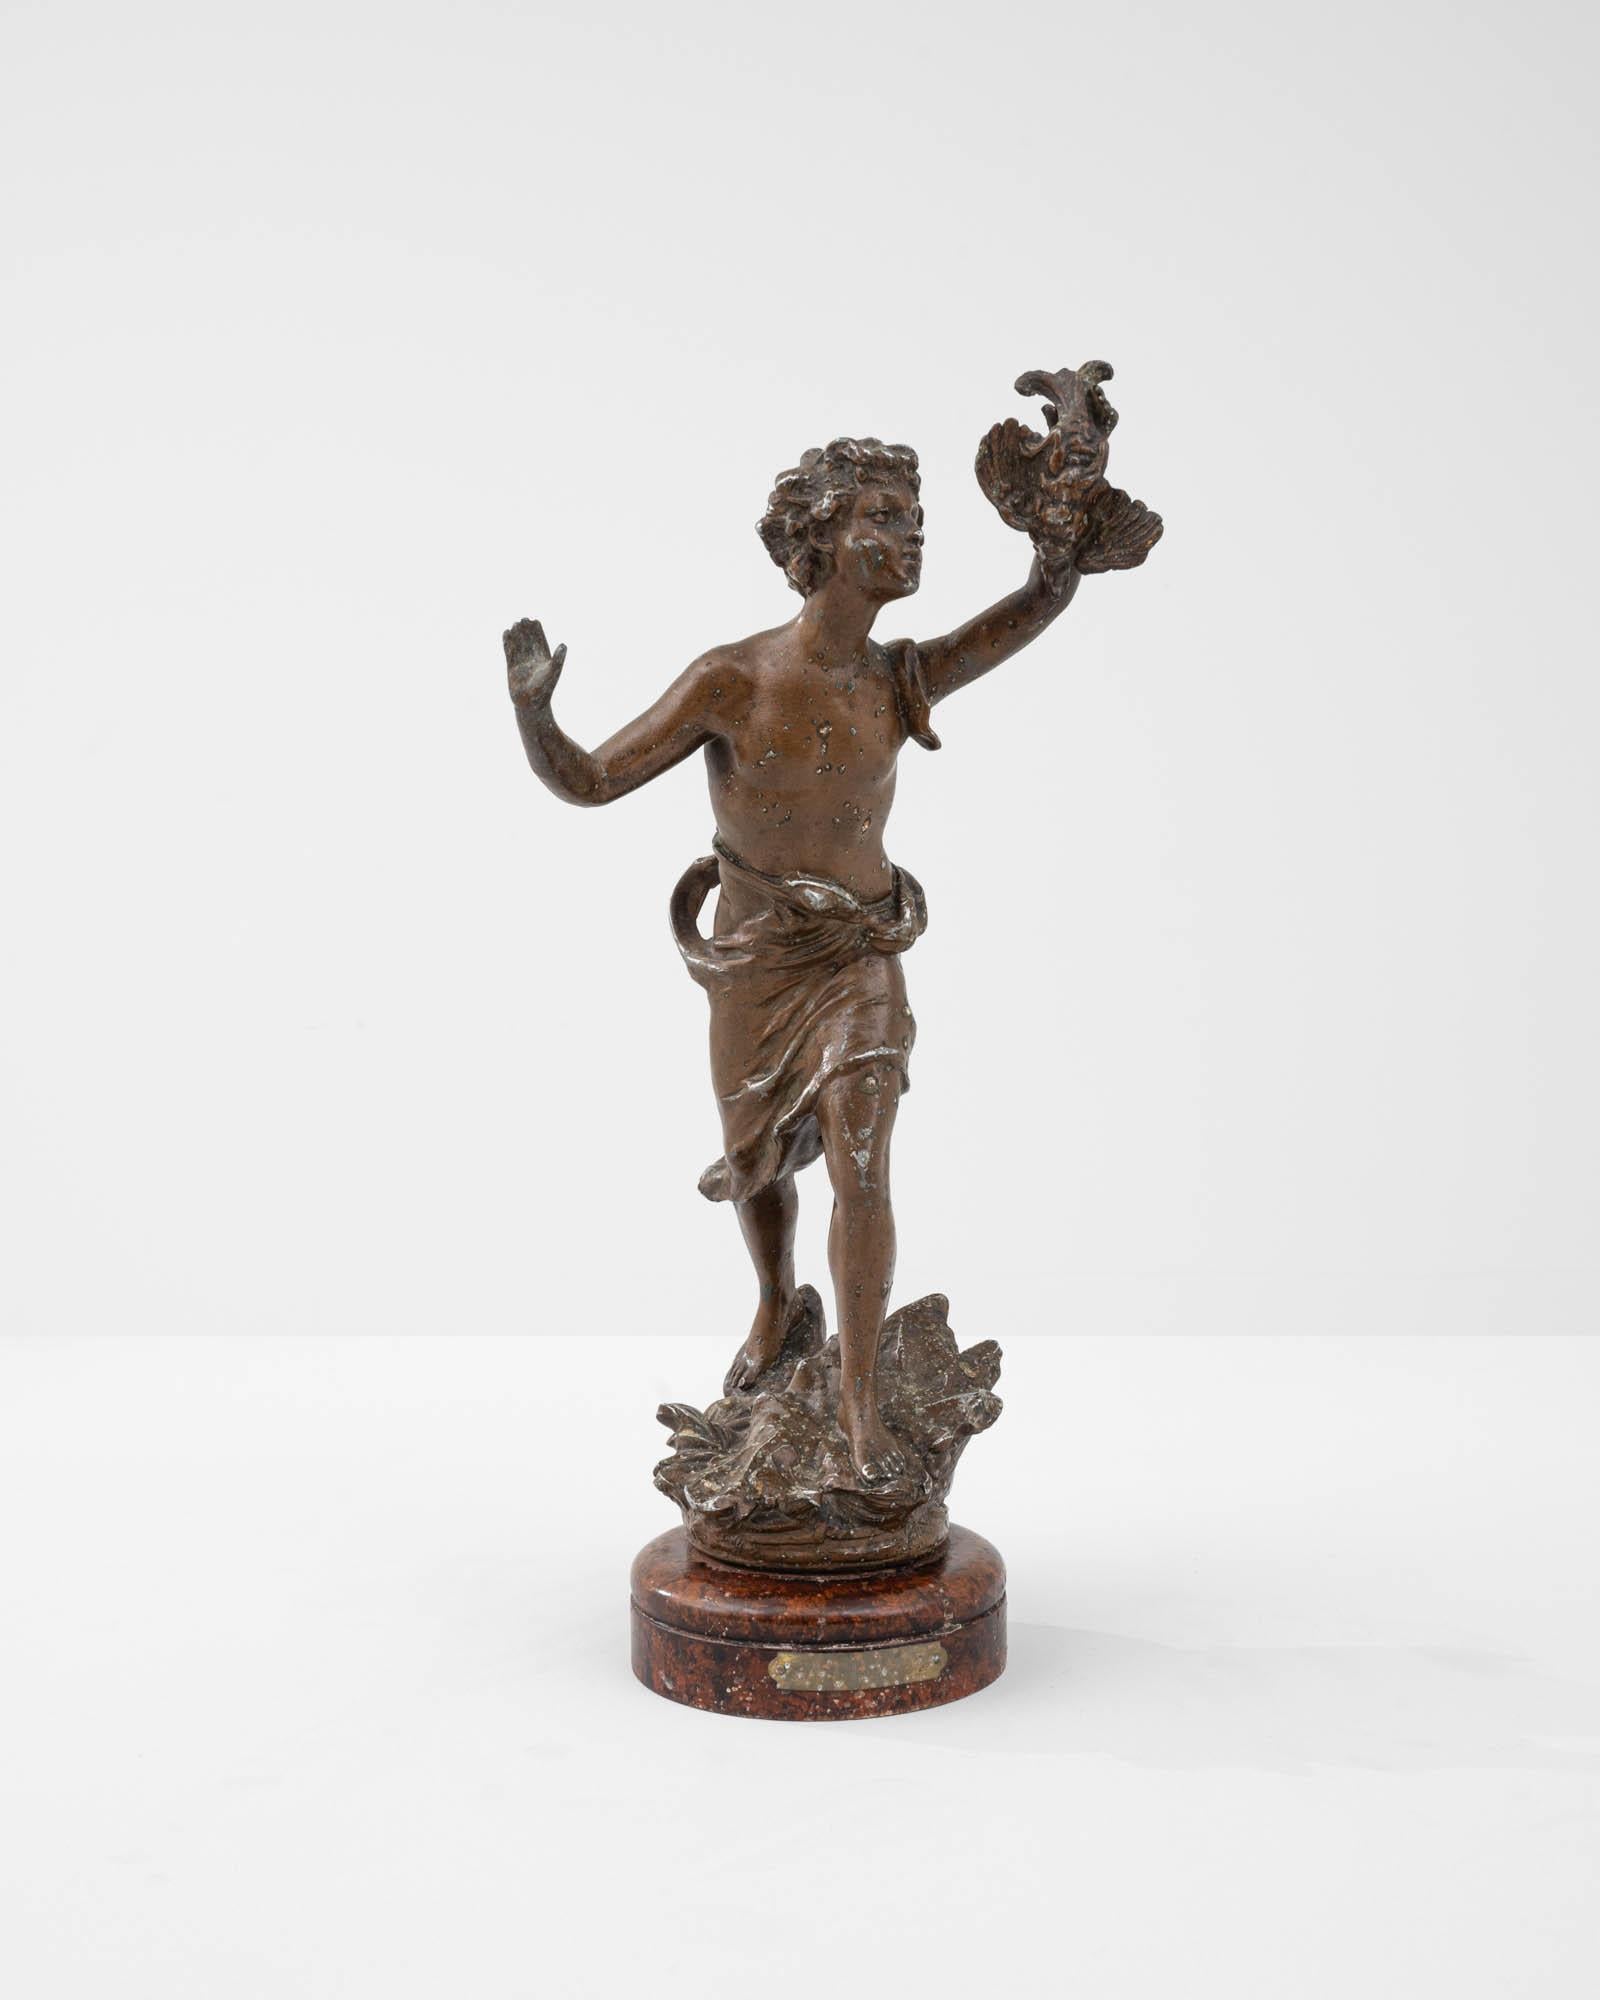 Cette figurine en métal a été fabriquée en France au début du XXe siècle. Représentant une jeune figure en mouvement, tenant un oiseau en l'air, la sculpture miniature rappelle le motif classique du jeune et de la colombe. Fabriqué en étain, le